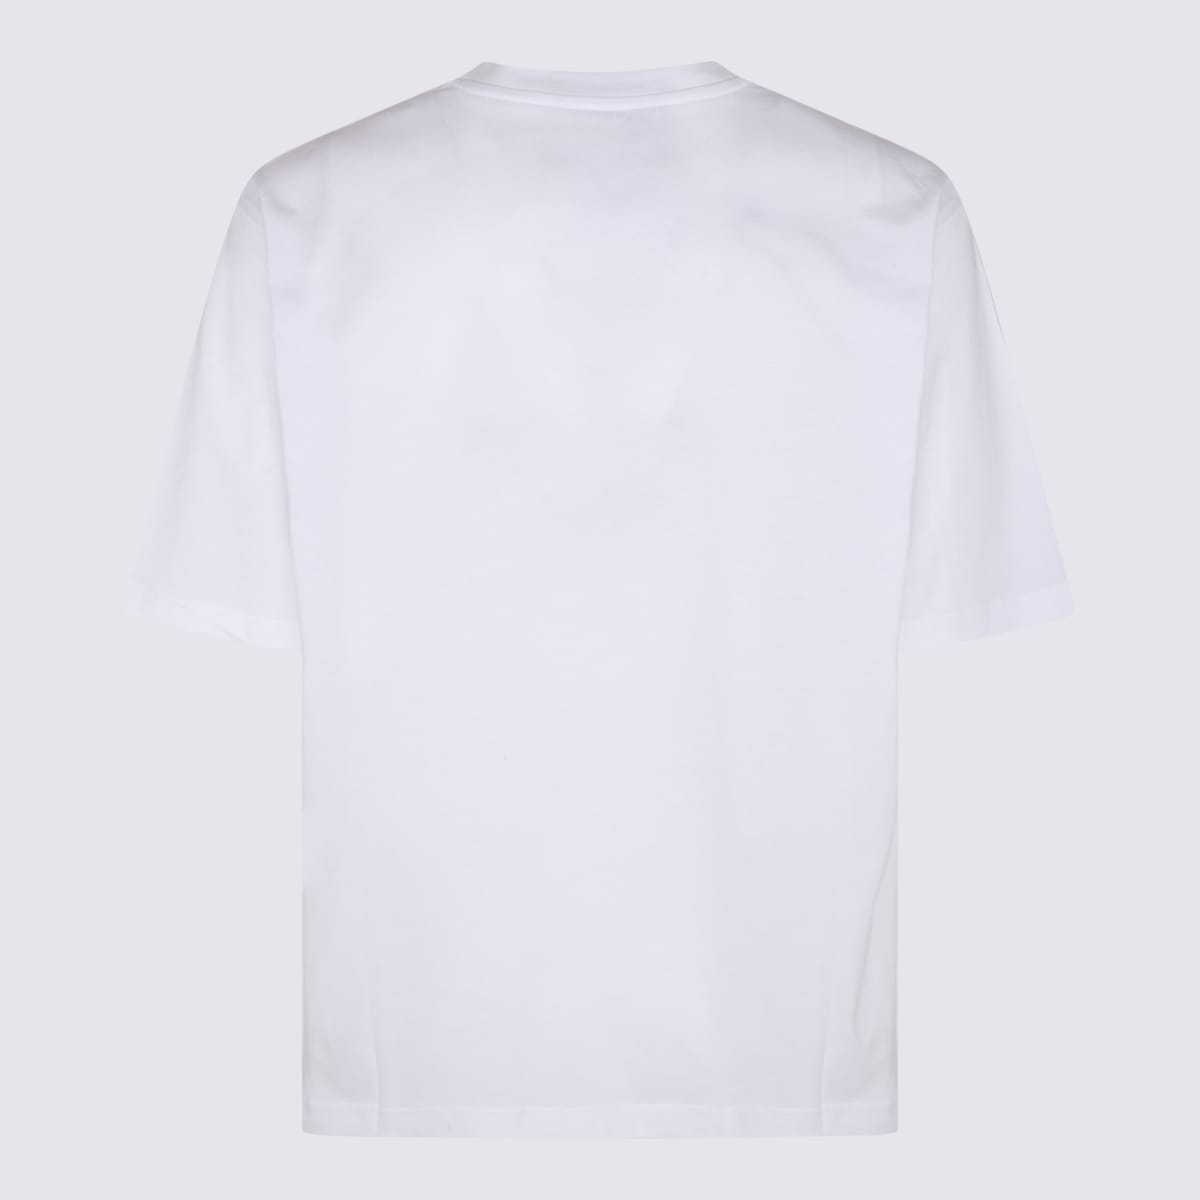 Shop Moschino White Cotton T-shirt